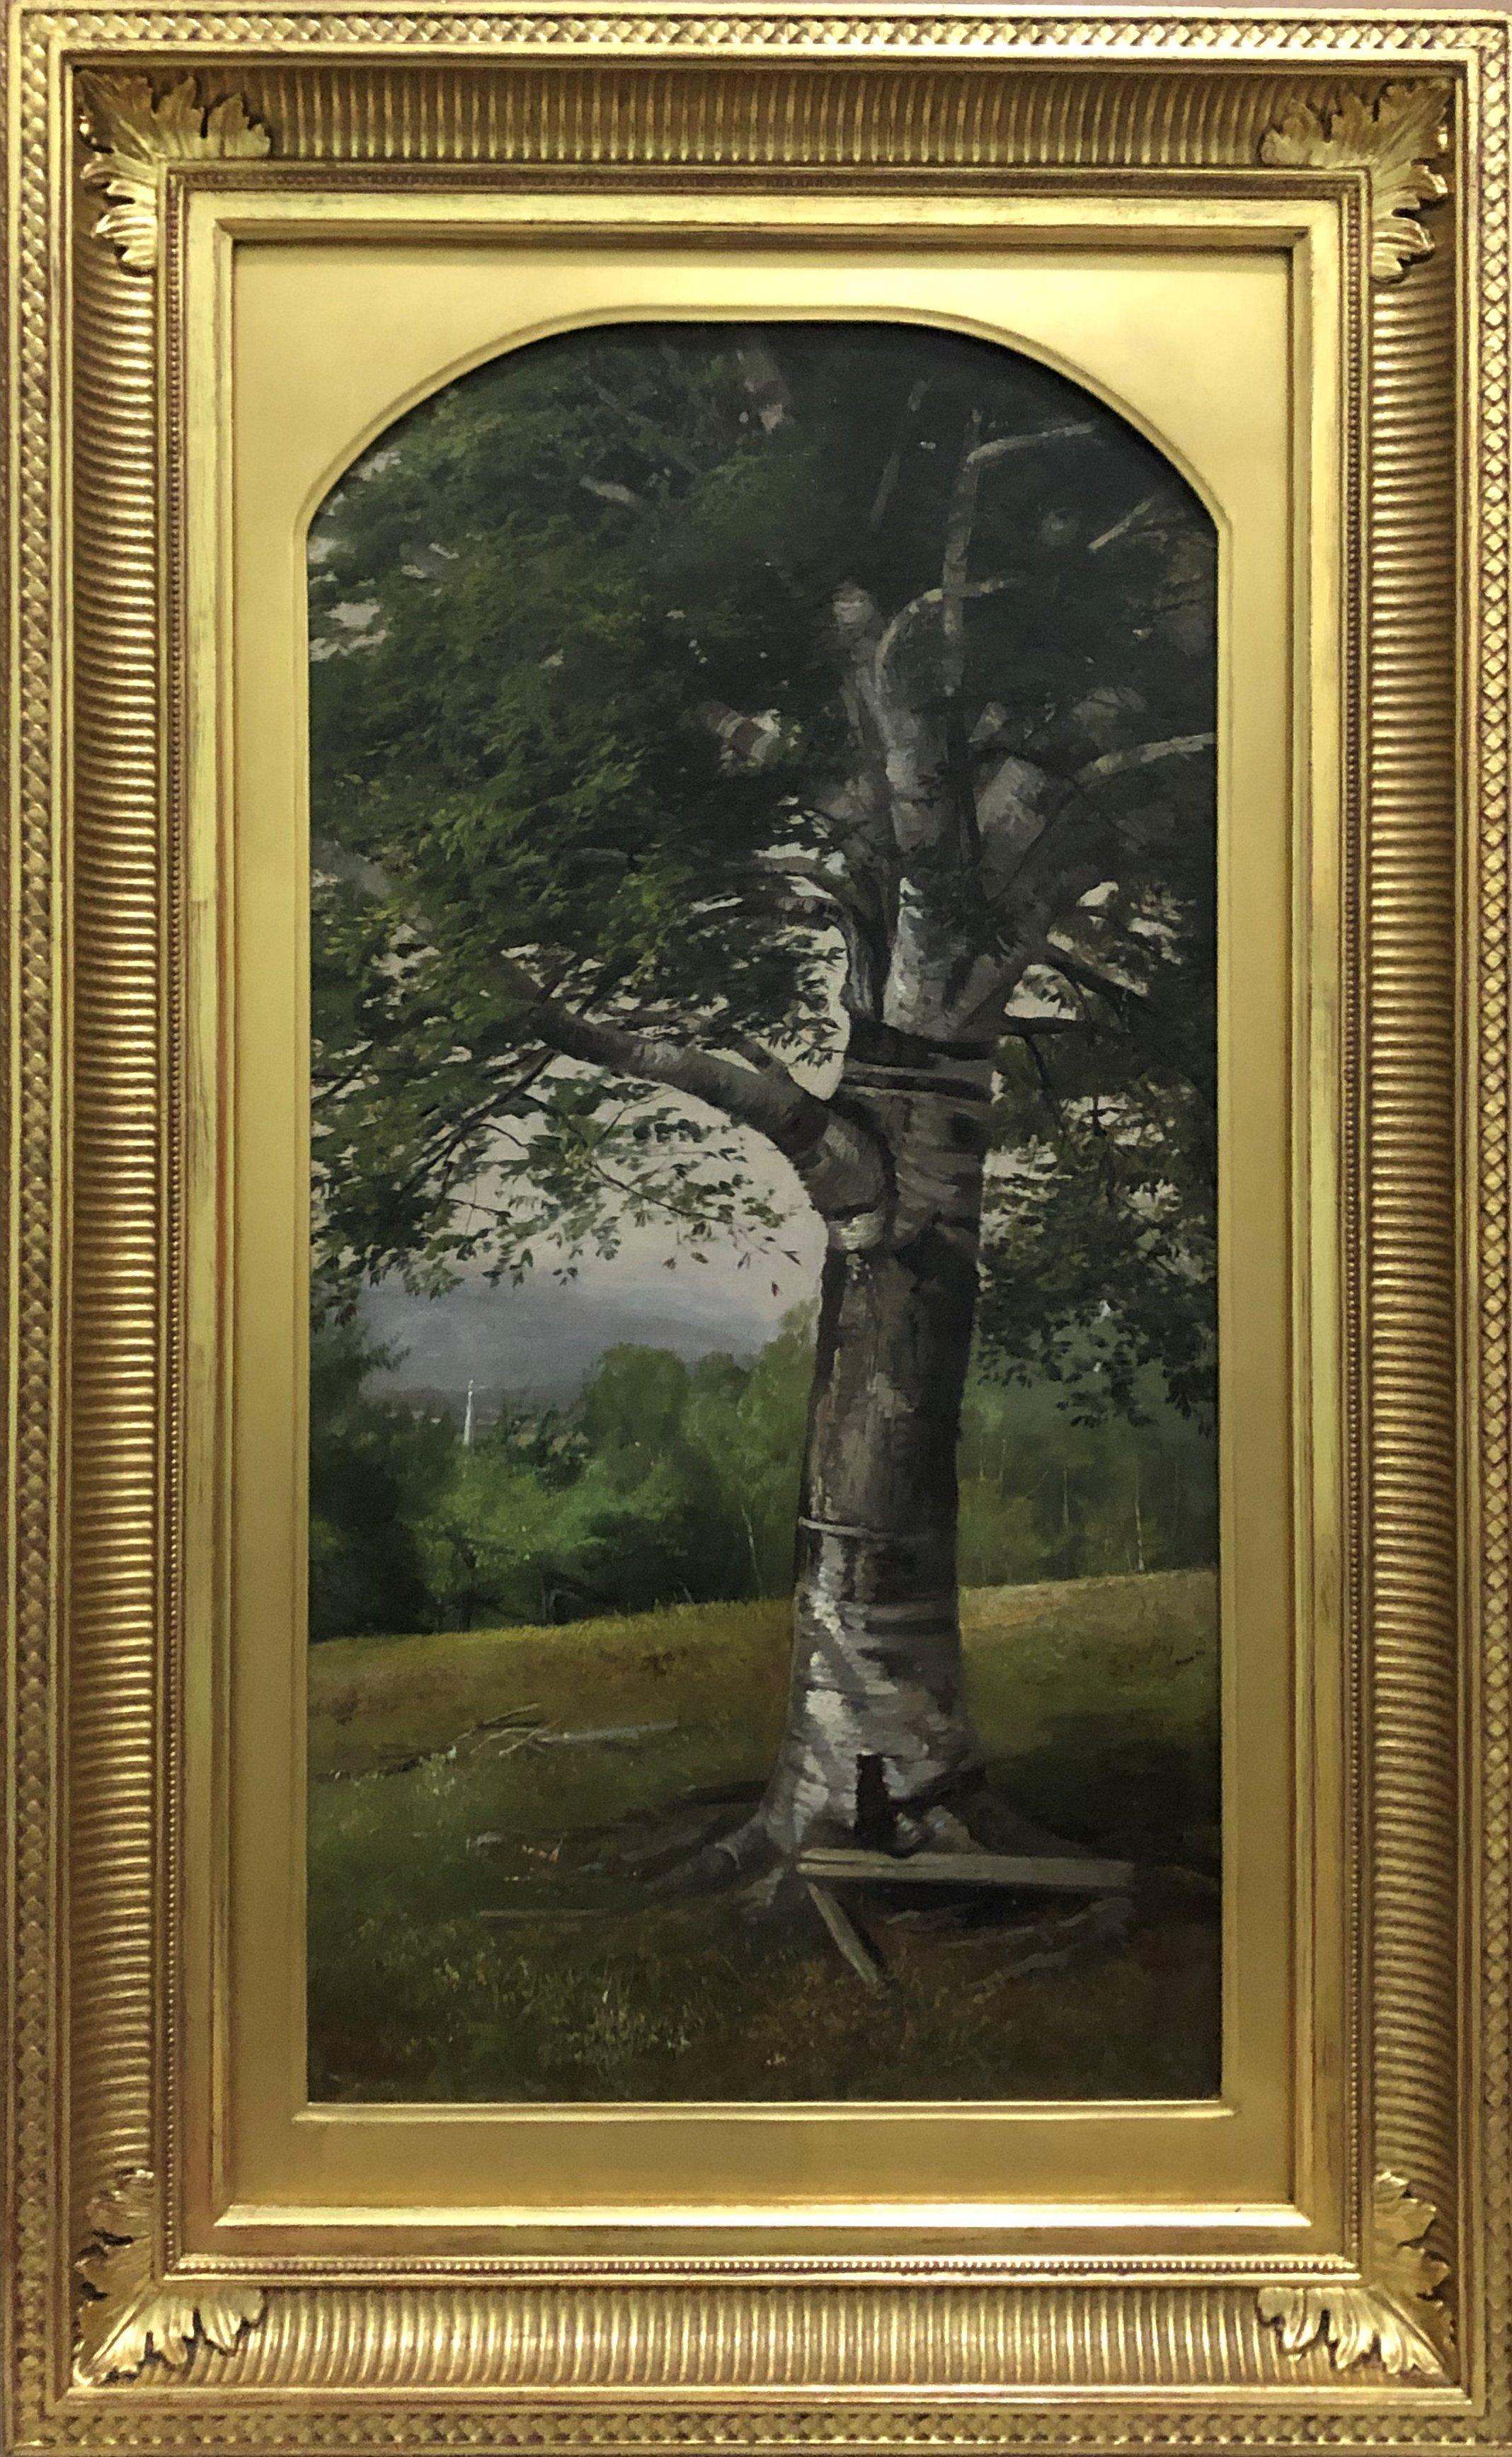 Landscape Painting Harrison Bird Brown - "Un arbre de bouleau dans le Maine", paysage ancien de l'Hudson River School, montagnes blanches